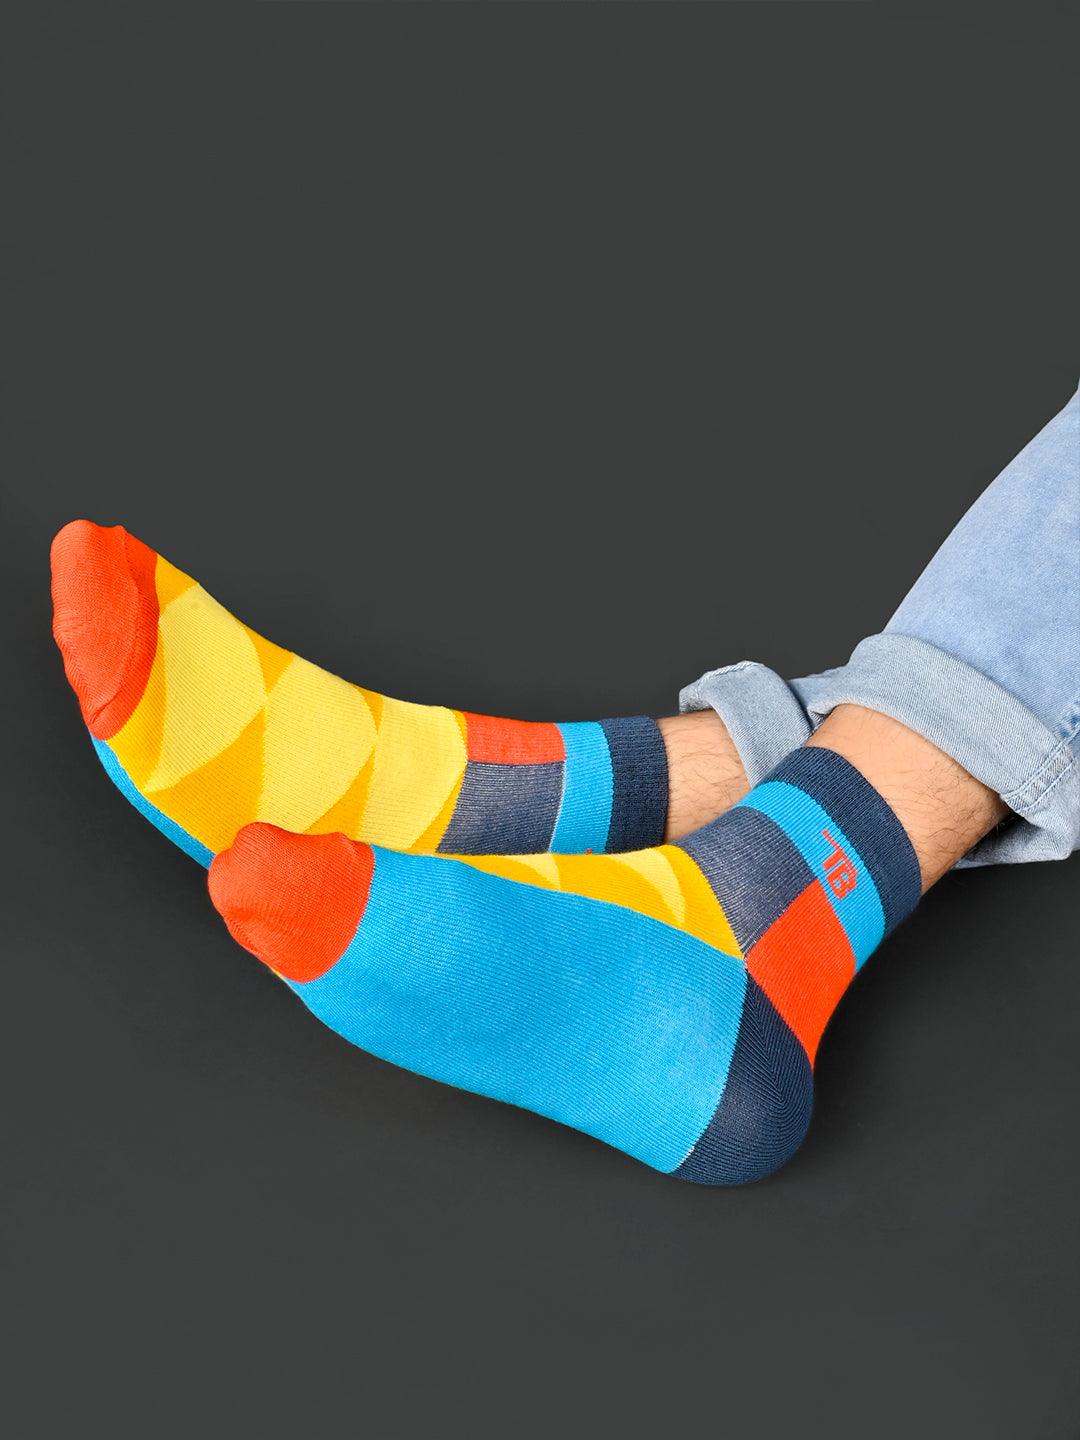 socks for women 